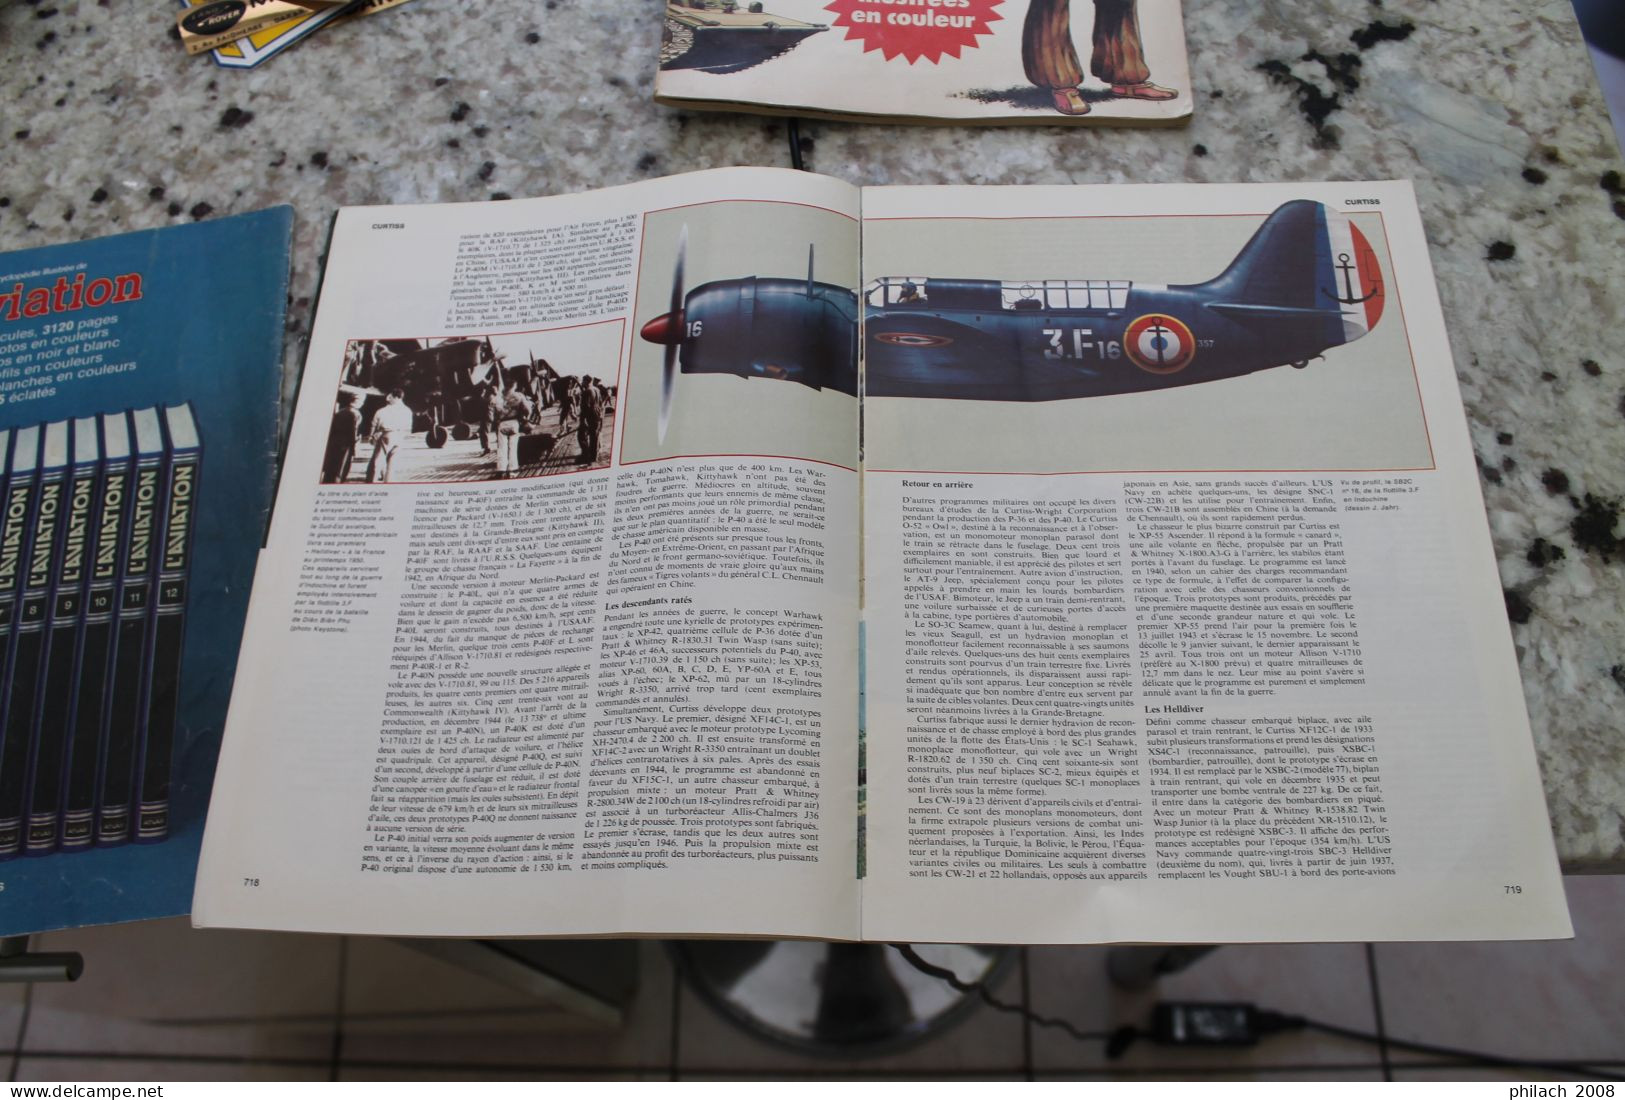 REVUE l'encyclopédie illustrée de l'aviation numéro 1 et 37